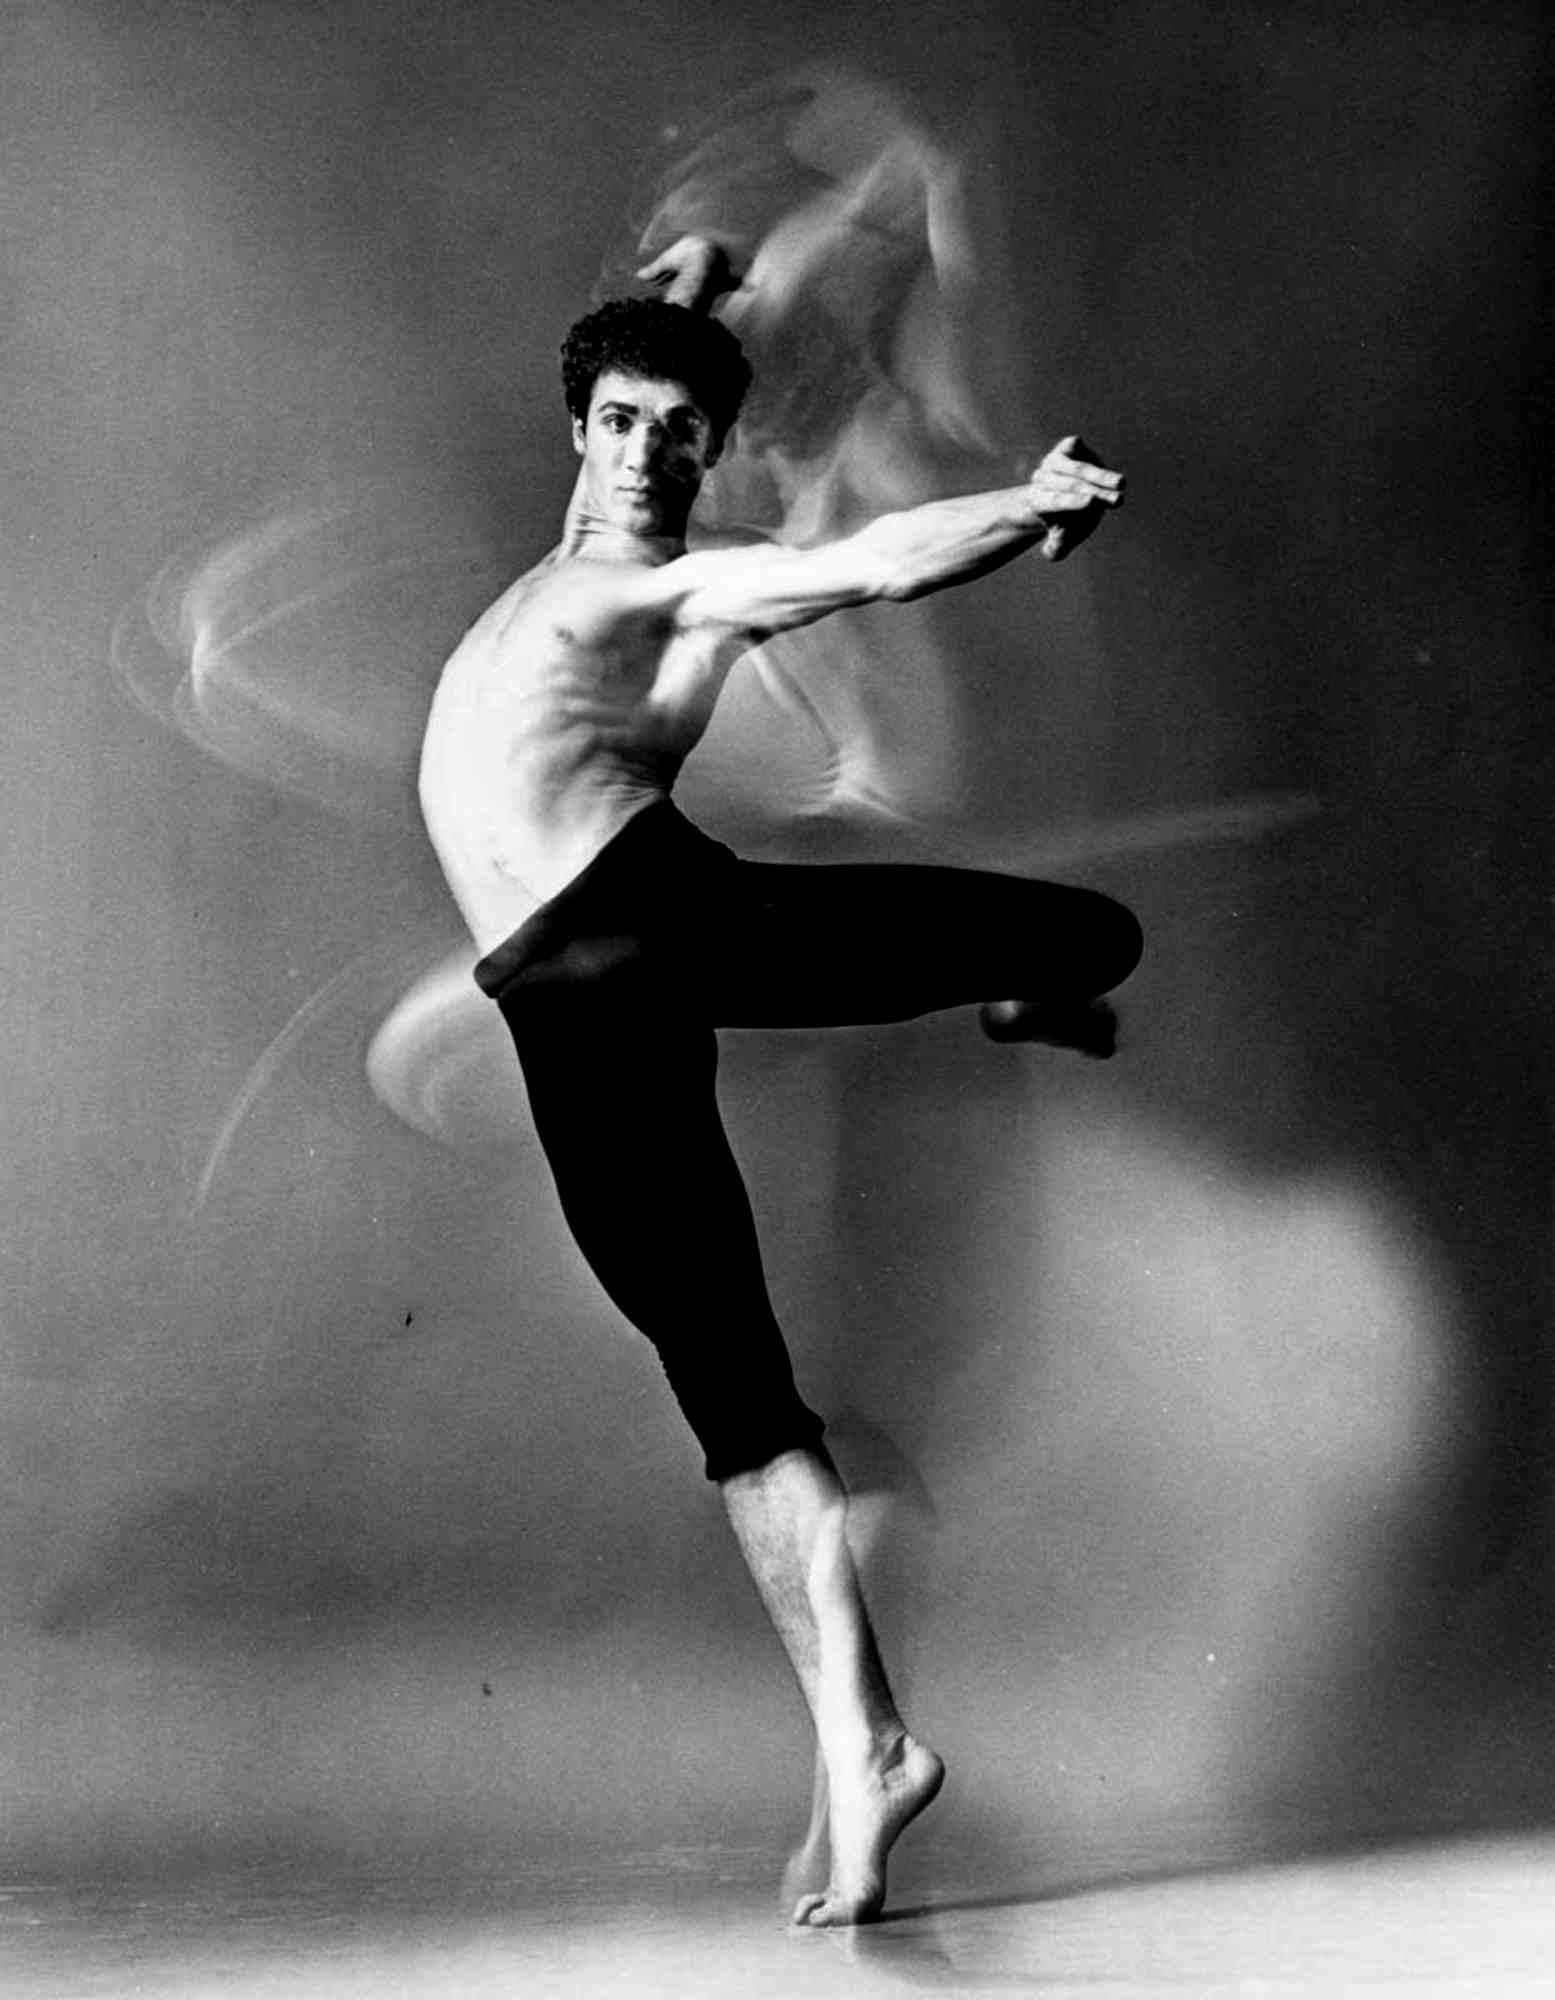 11 x 14" alte Silbergelatinefotografie des Tänzers/Choreografen Louis Falco, tanzend in Mehrfachbelichtung, 1963. Signiert auf der Rückseite des Drucks von Jack Mitchell. Kommt direkt aus dem Jack Mitchell Archiv mit einem Echtheitszertifikat. 